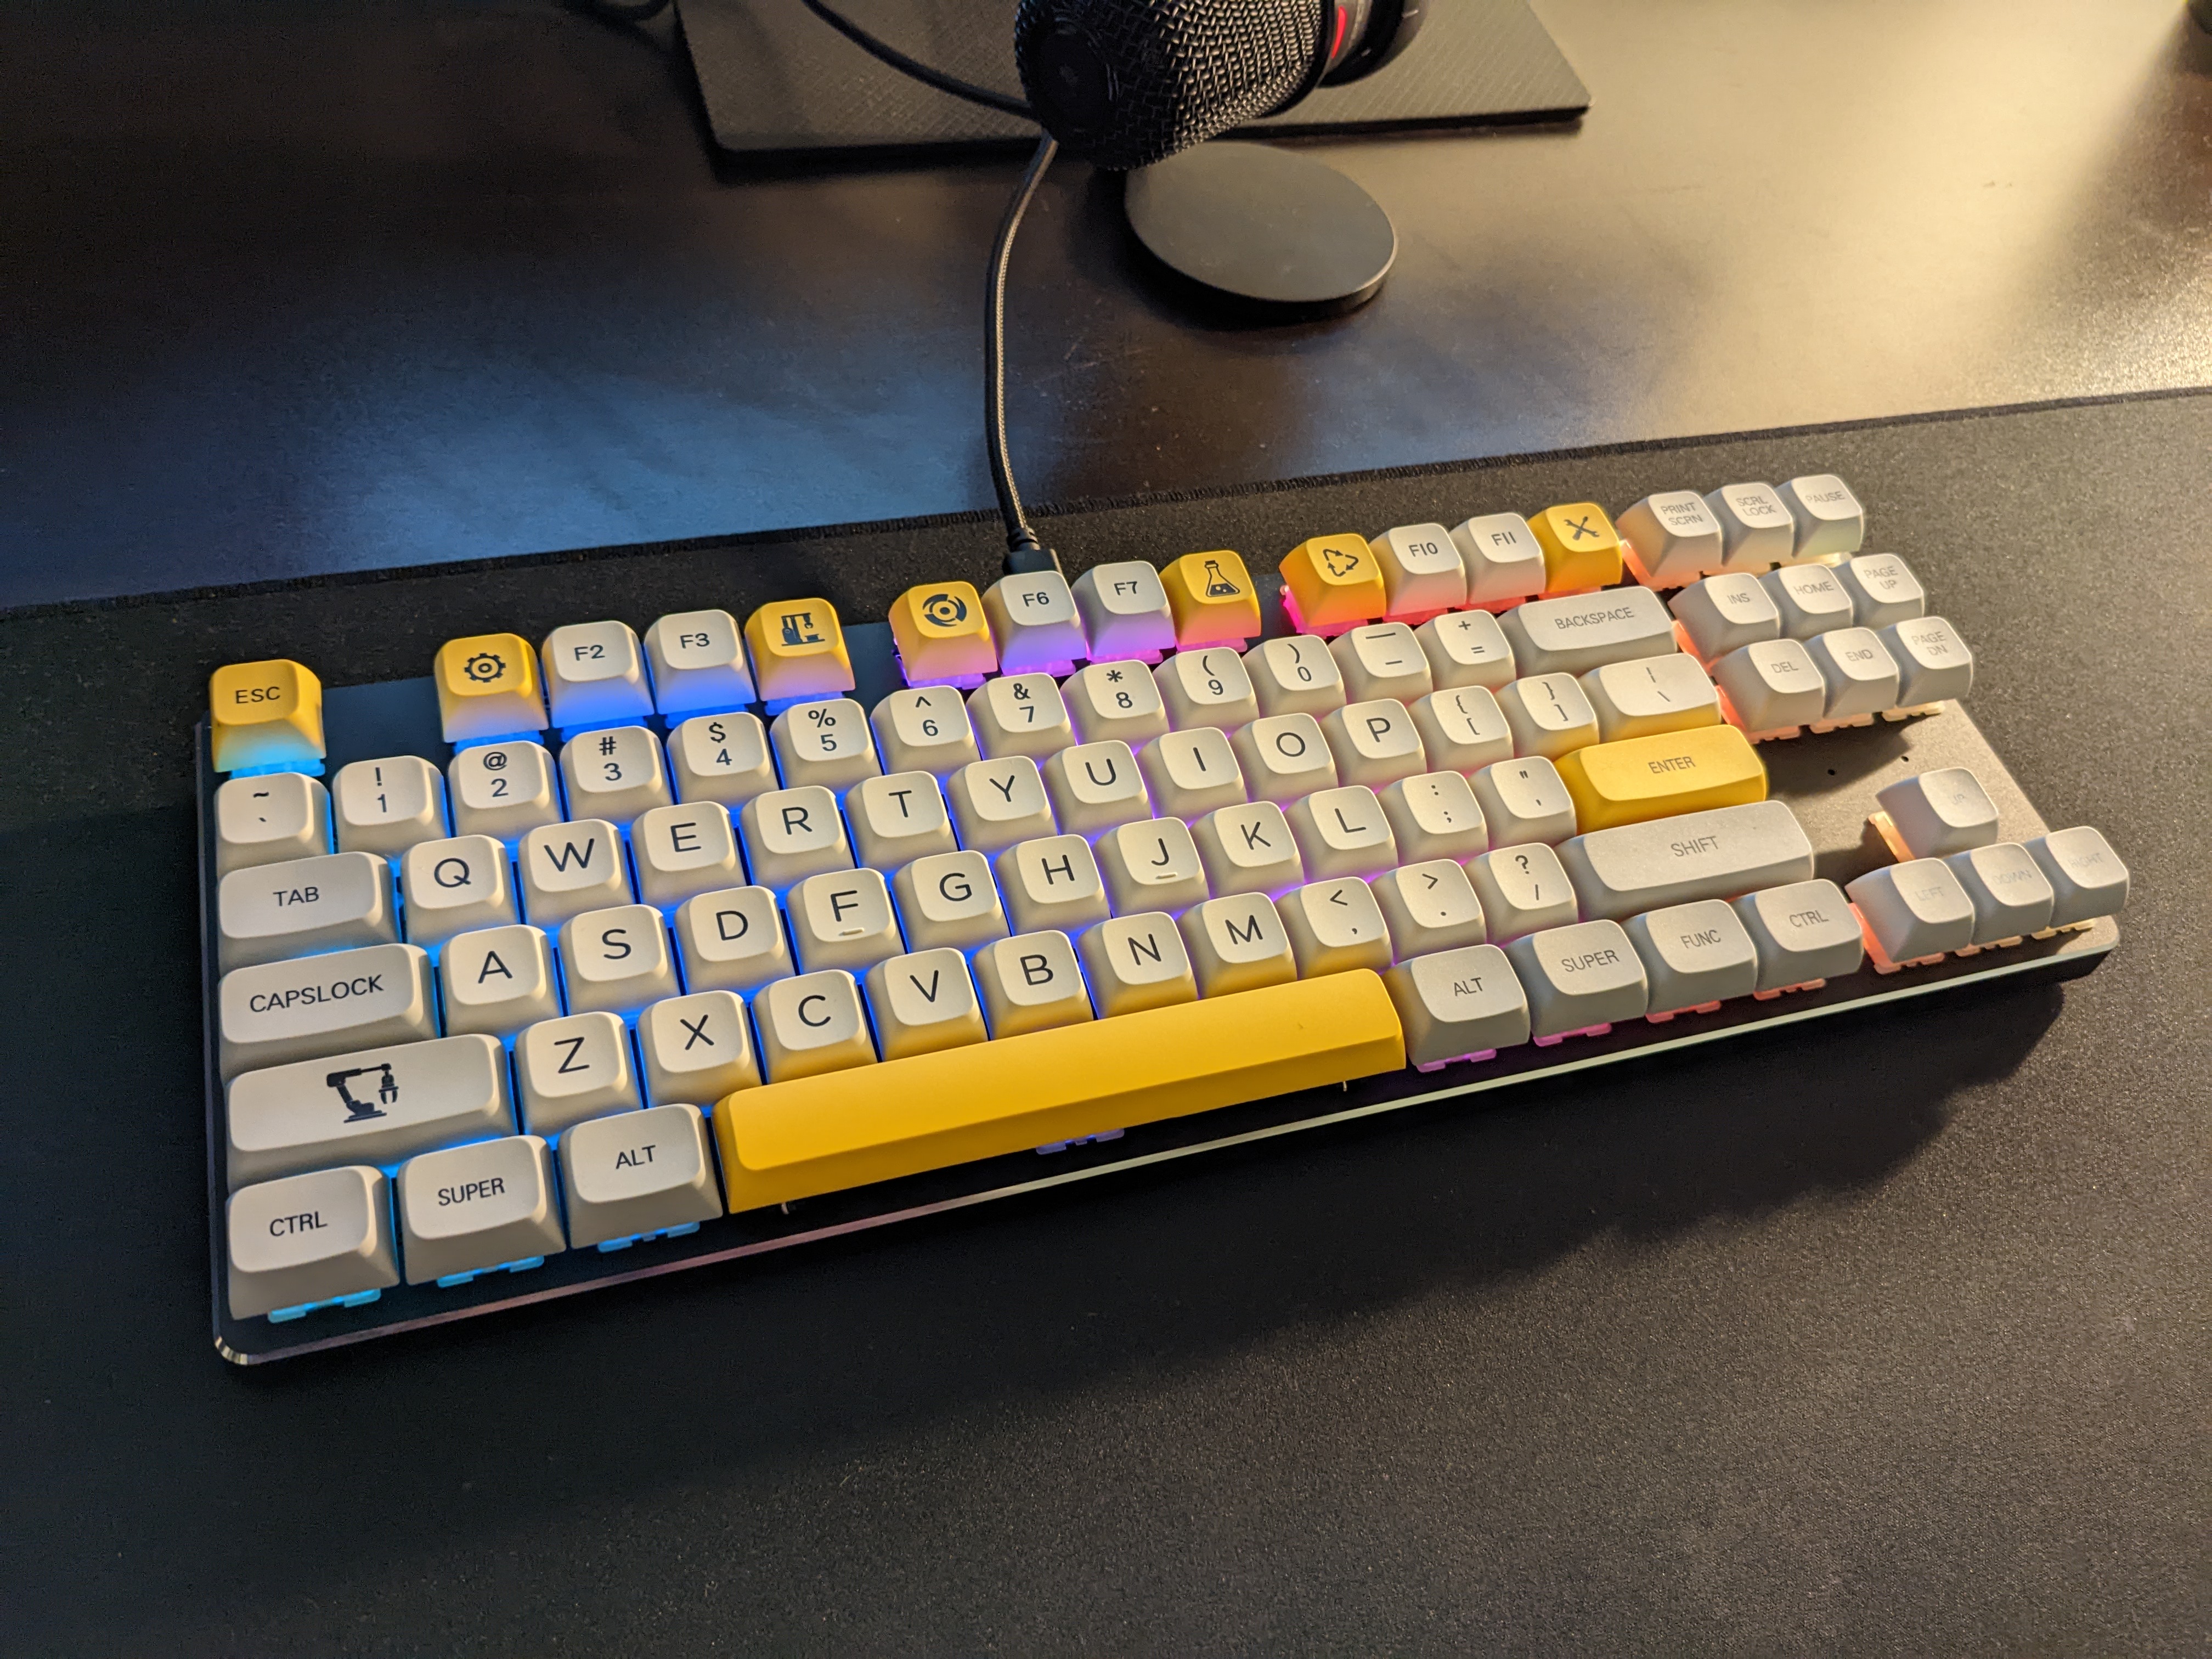 Finished keyboard on desk